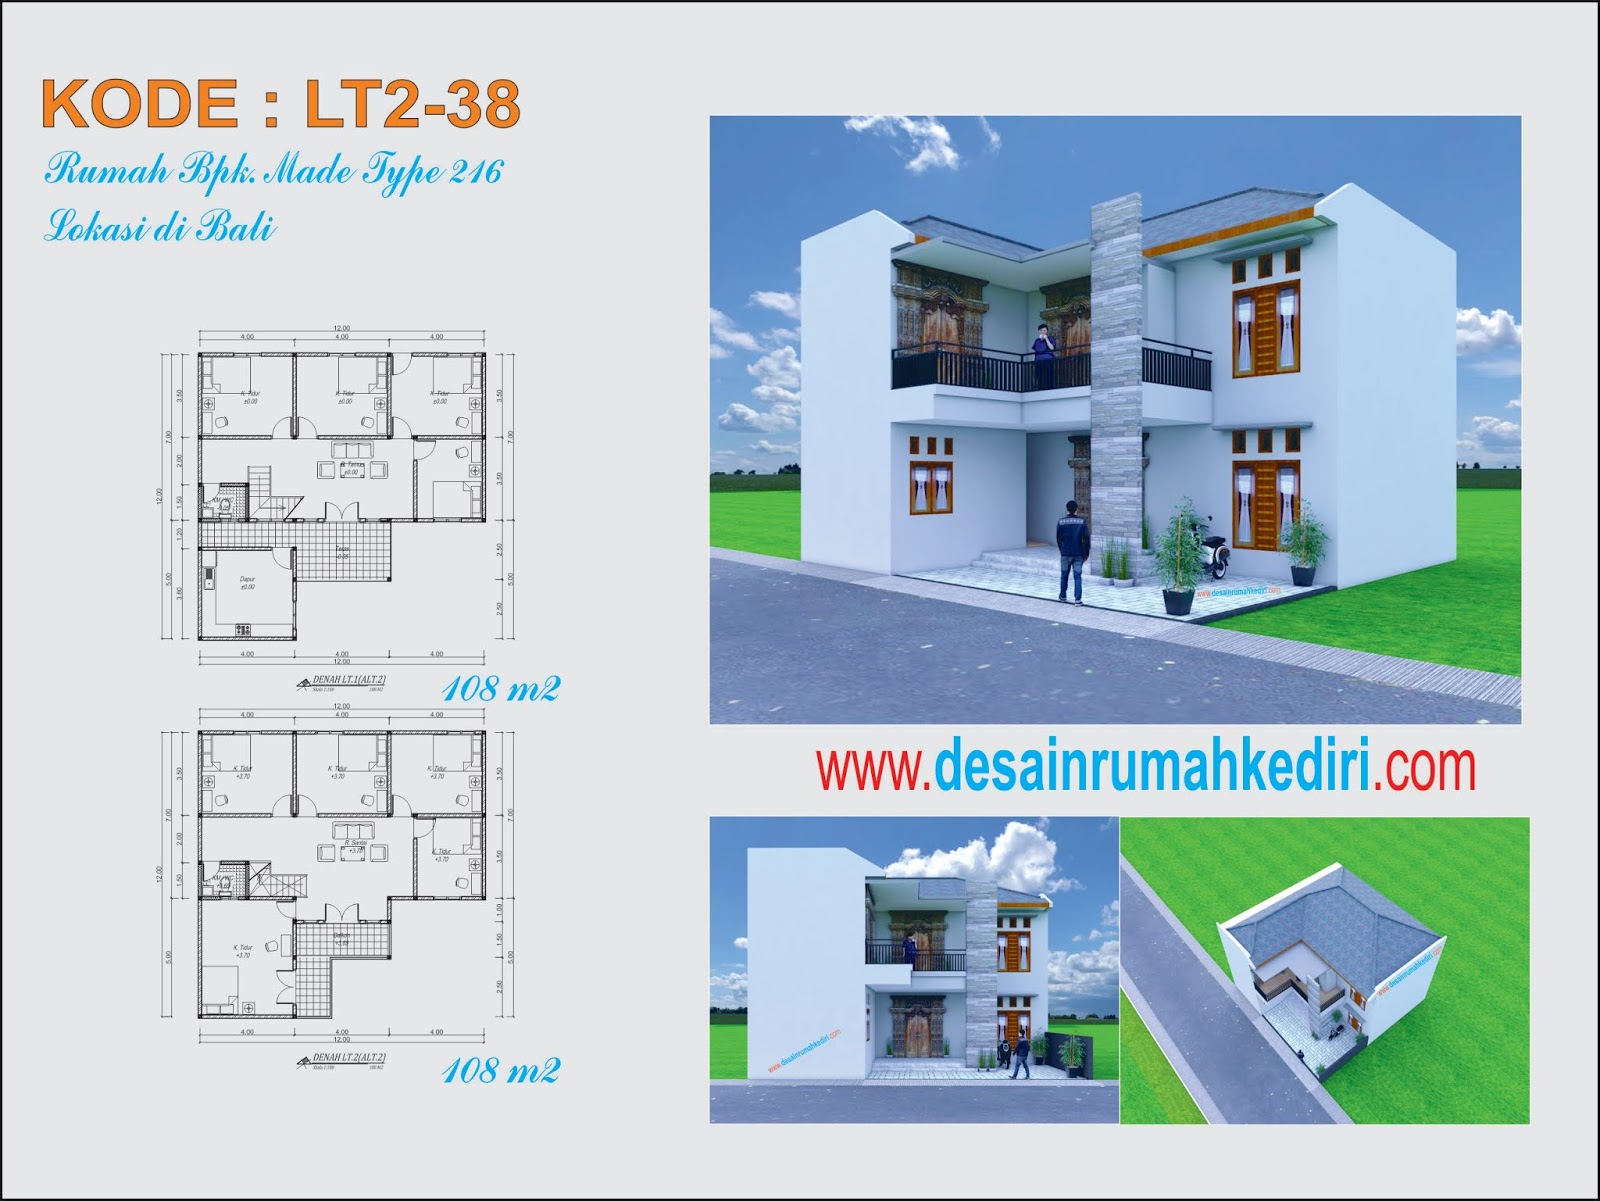 Lt2 38 Renovasi Rumah 2 Lantai Bpk Made Bali Jasa Desain